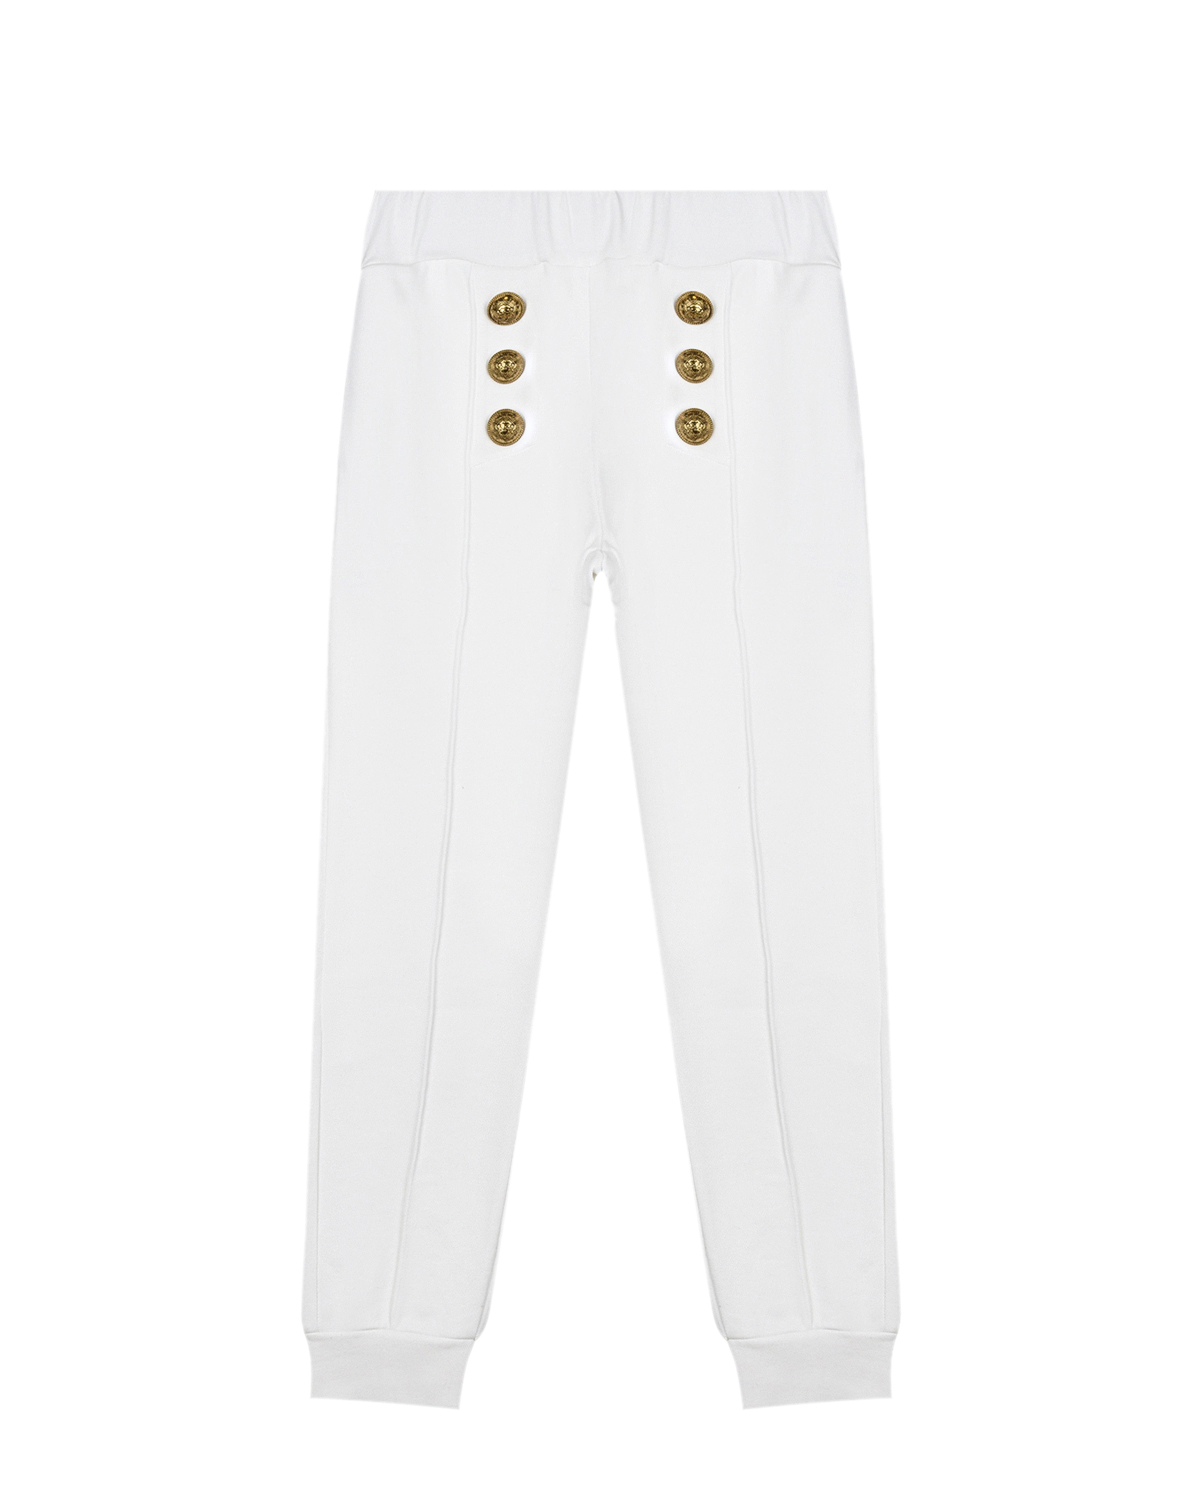 Где купить Белые брюки с золотистыми пуговицами Balmain детские Balmain 